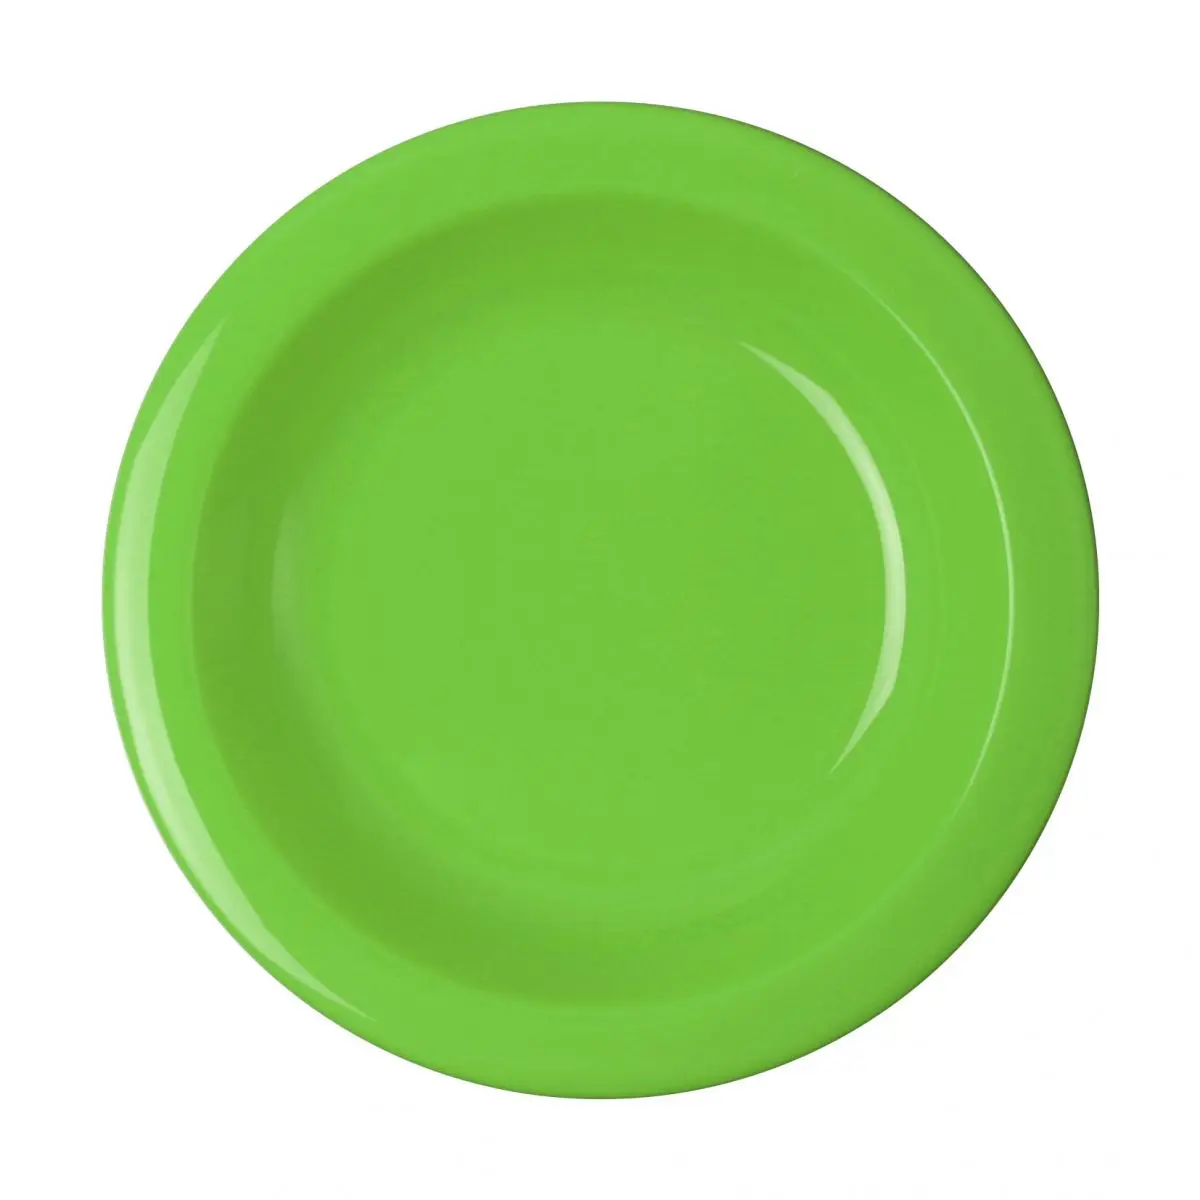 Riad séria PBT - polievkový tanier 21,6 cm, kiwi